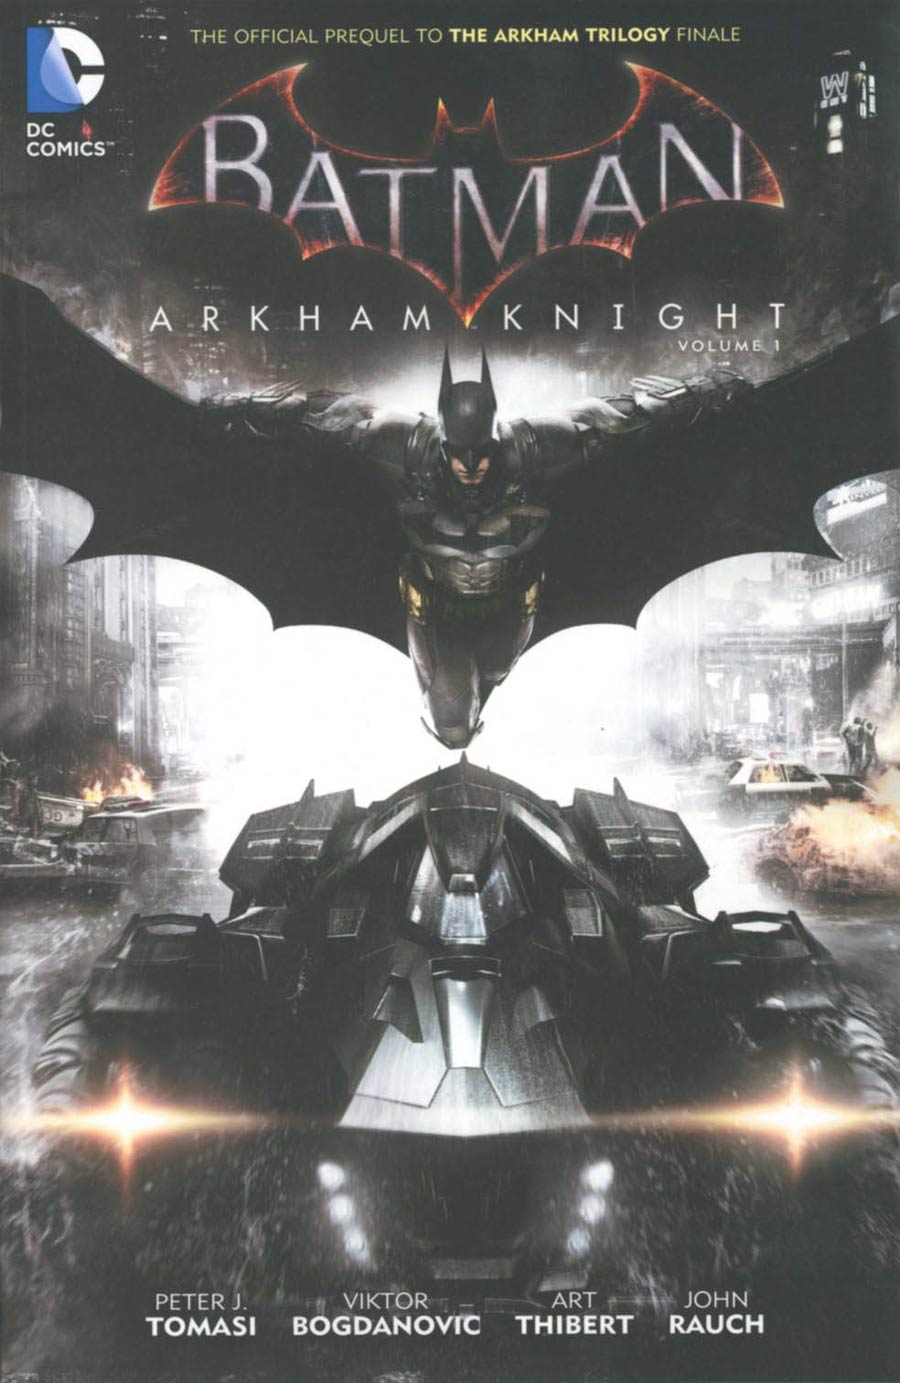 Batman Arkham Knight Vol 1 TP